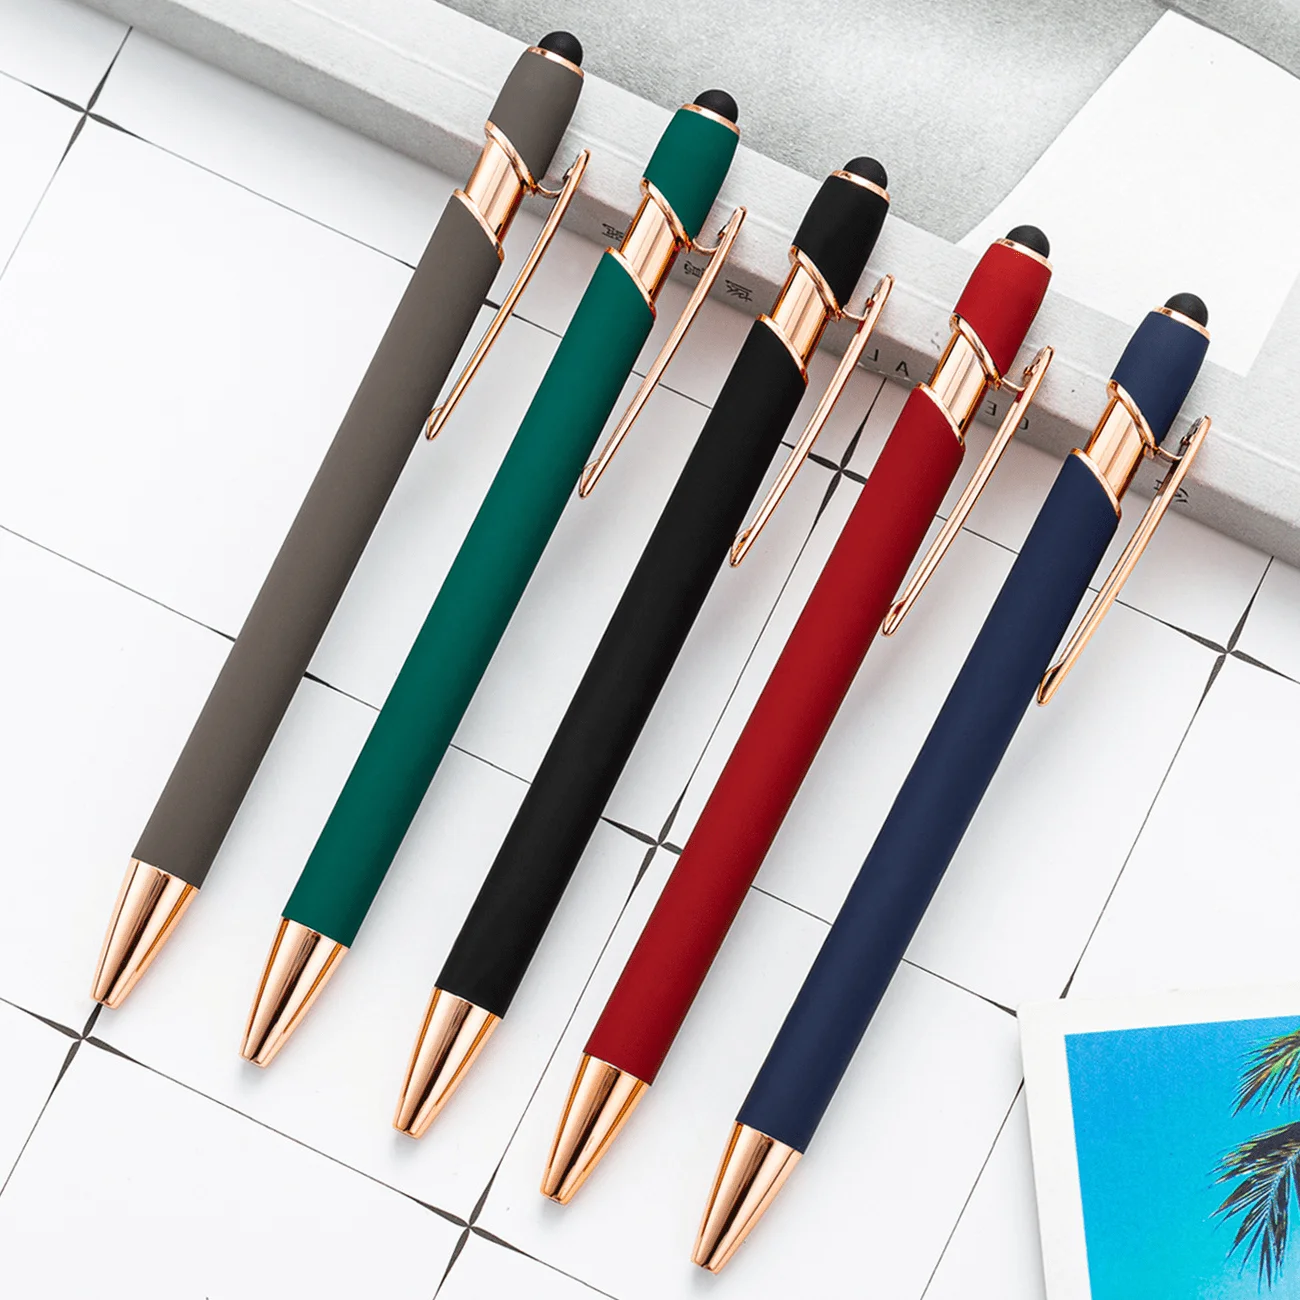 1 Piece Stationery Office School Supplies Press Touch Screen Ballpoint Pen Cute Metal Pens Kawaii School Supplies